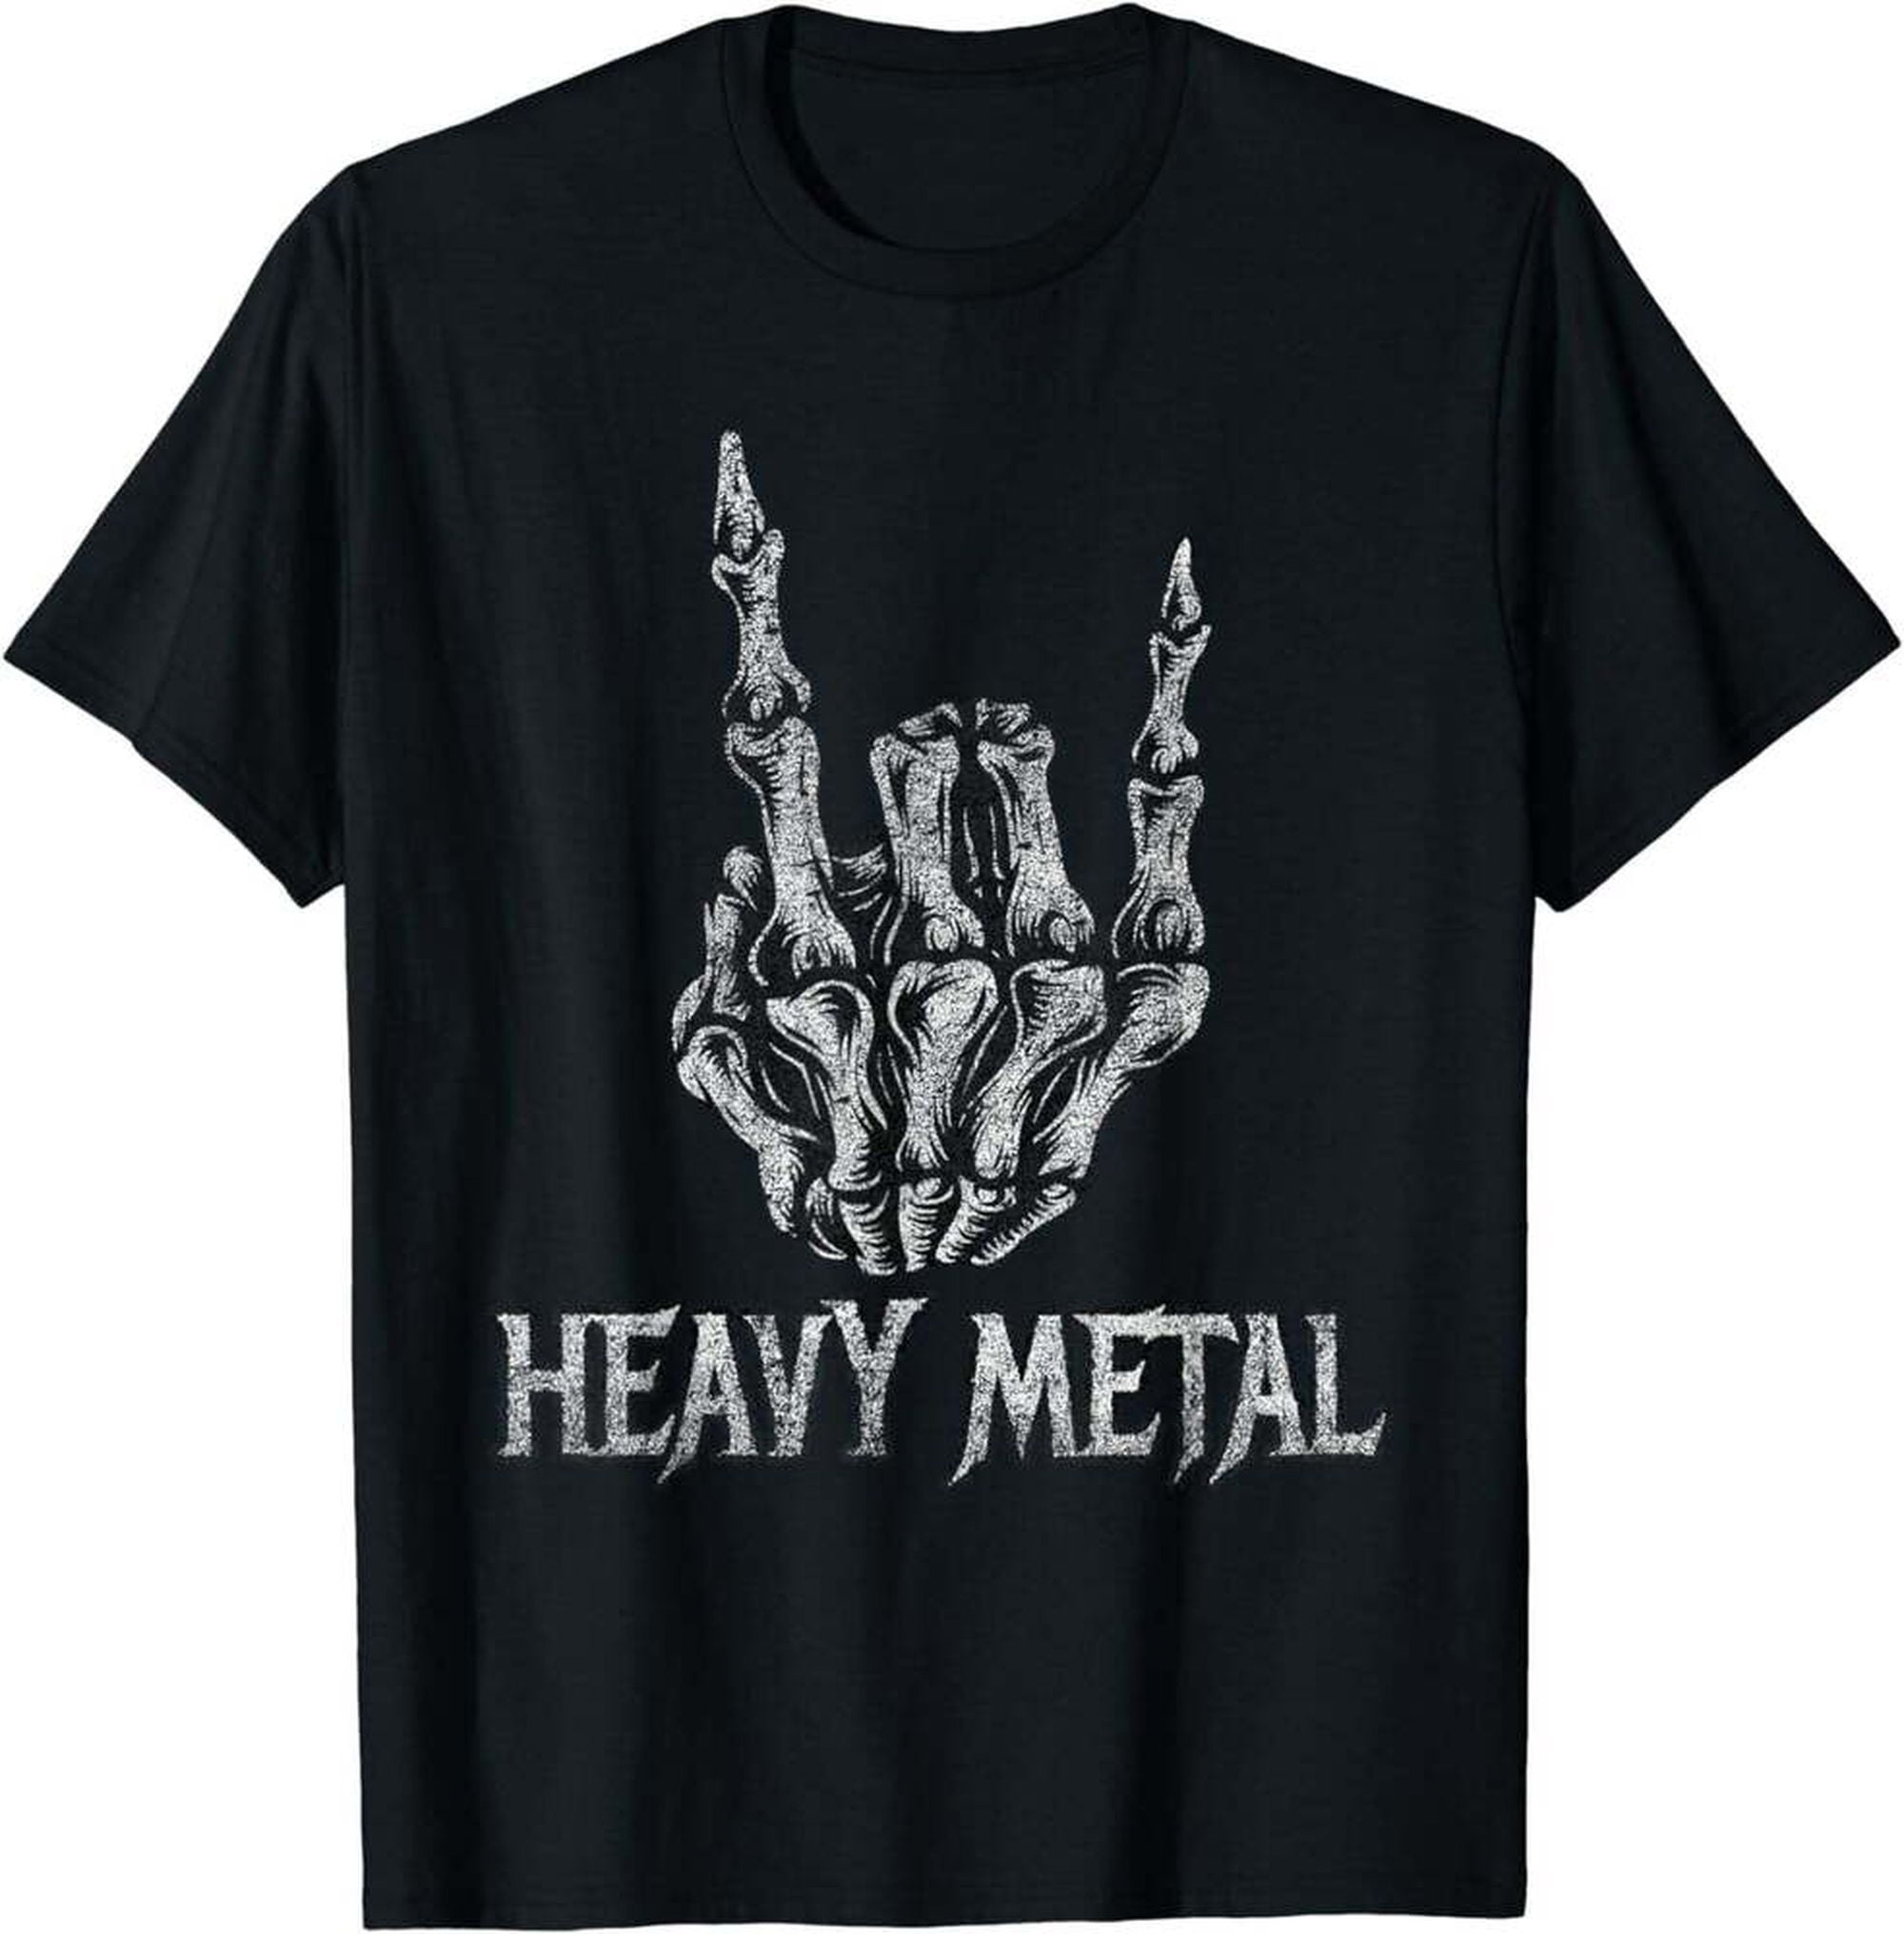 Vintage Rock Band T-Shirts - Classic Heavy Metal Concert Tees - Walmart.com